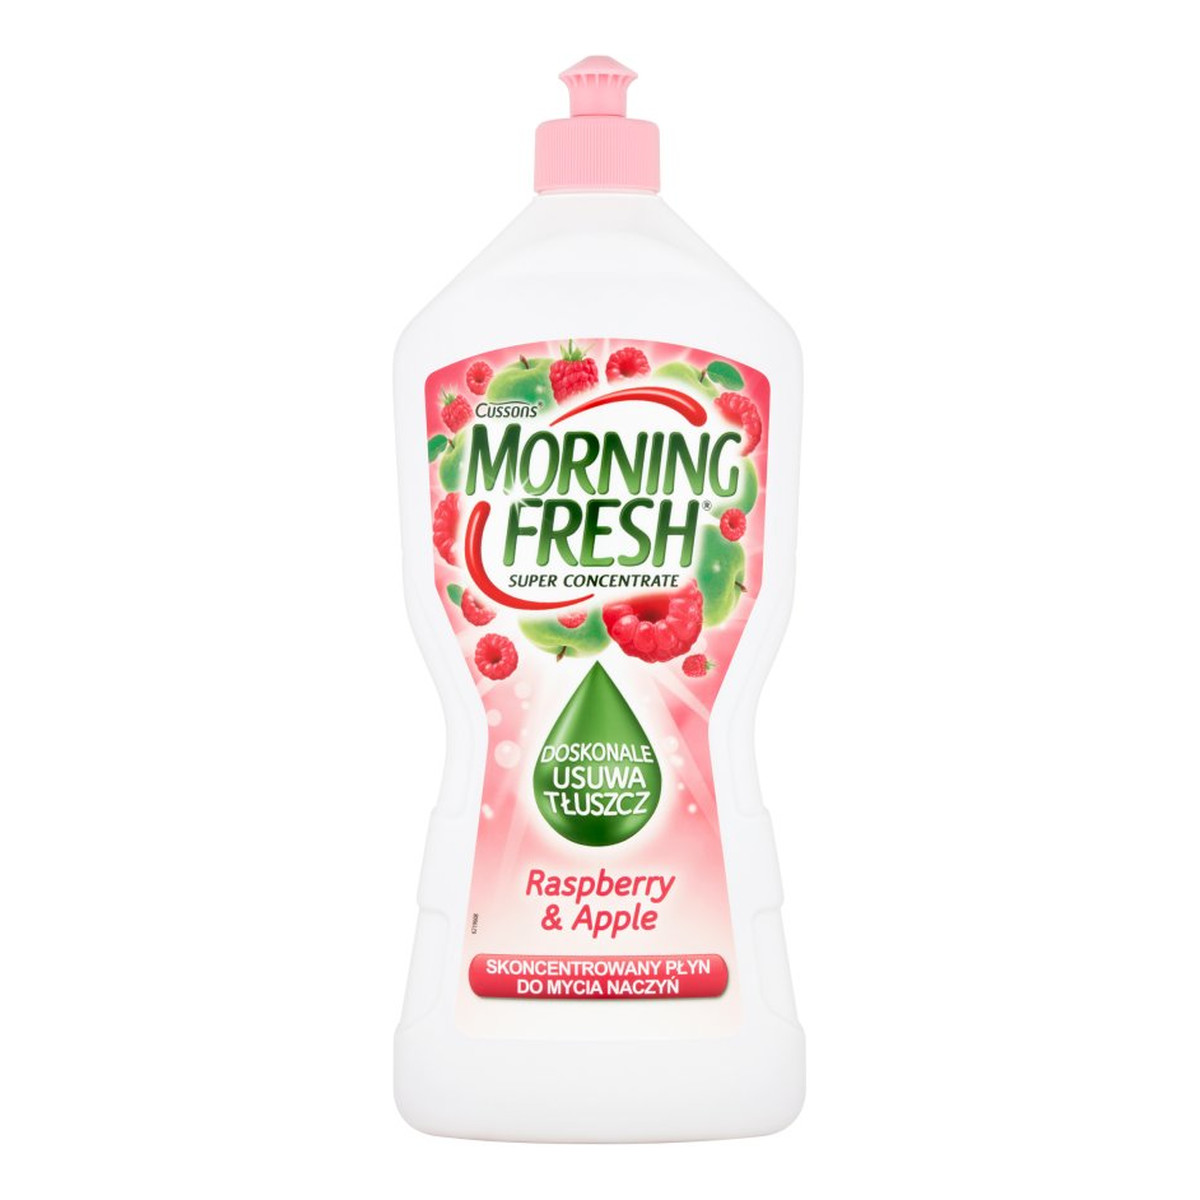 Morning Fresh Skoncentrowany Płyn do mycia naczyń Raspbery & Apple 900ml